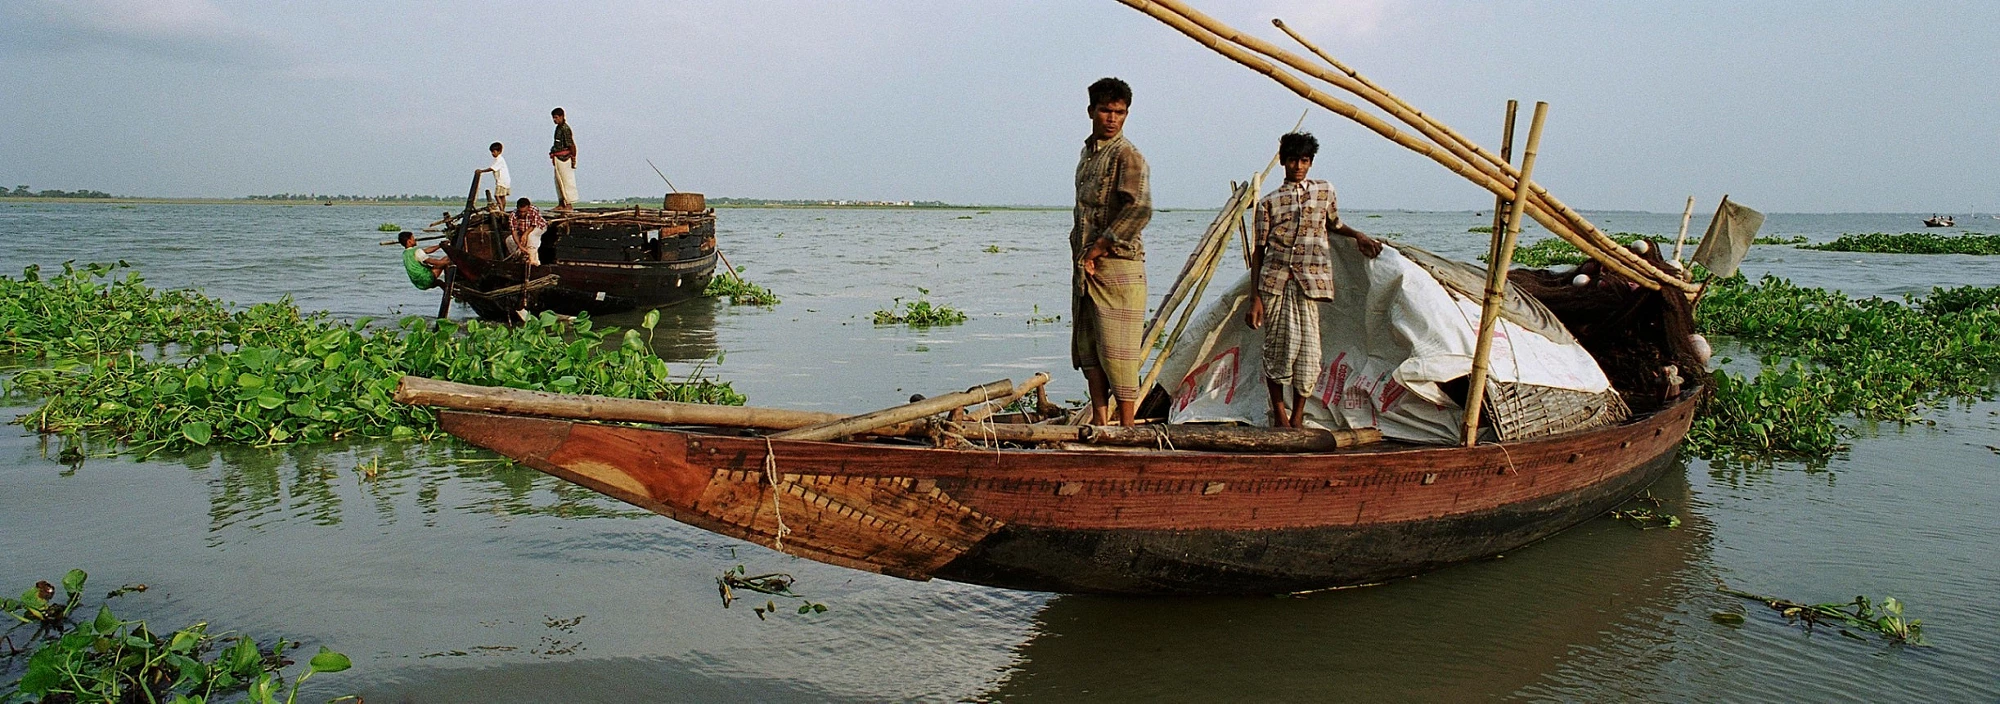 Boat sailing along the river, Bangladesh. Photo: Scott Wallace / World Bank